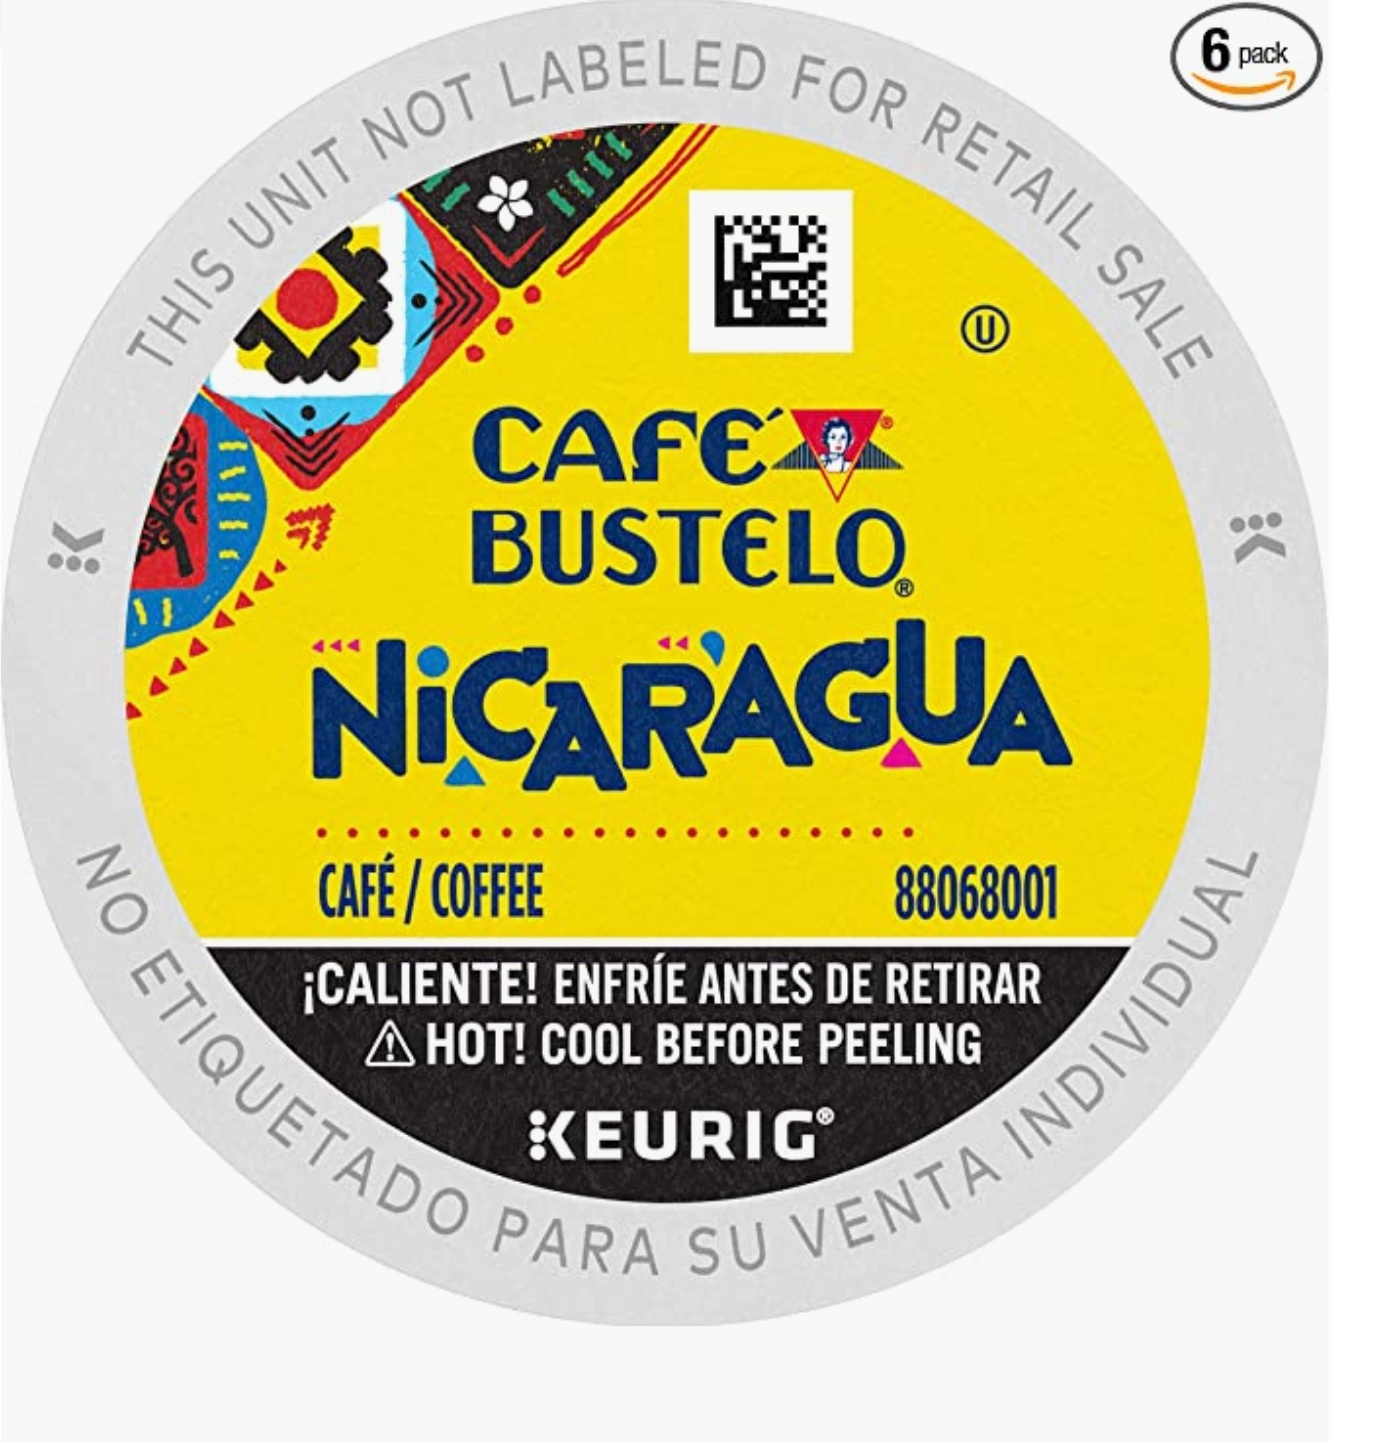 Café Bustelo Nicaragua Latin American Blend Coffee, Dark Roast, Keurig K-Cup Pods, 12 Count (Pack of 6) $33.19